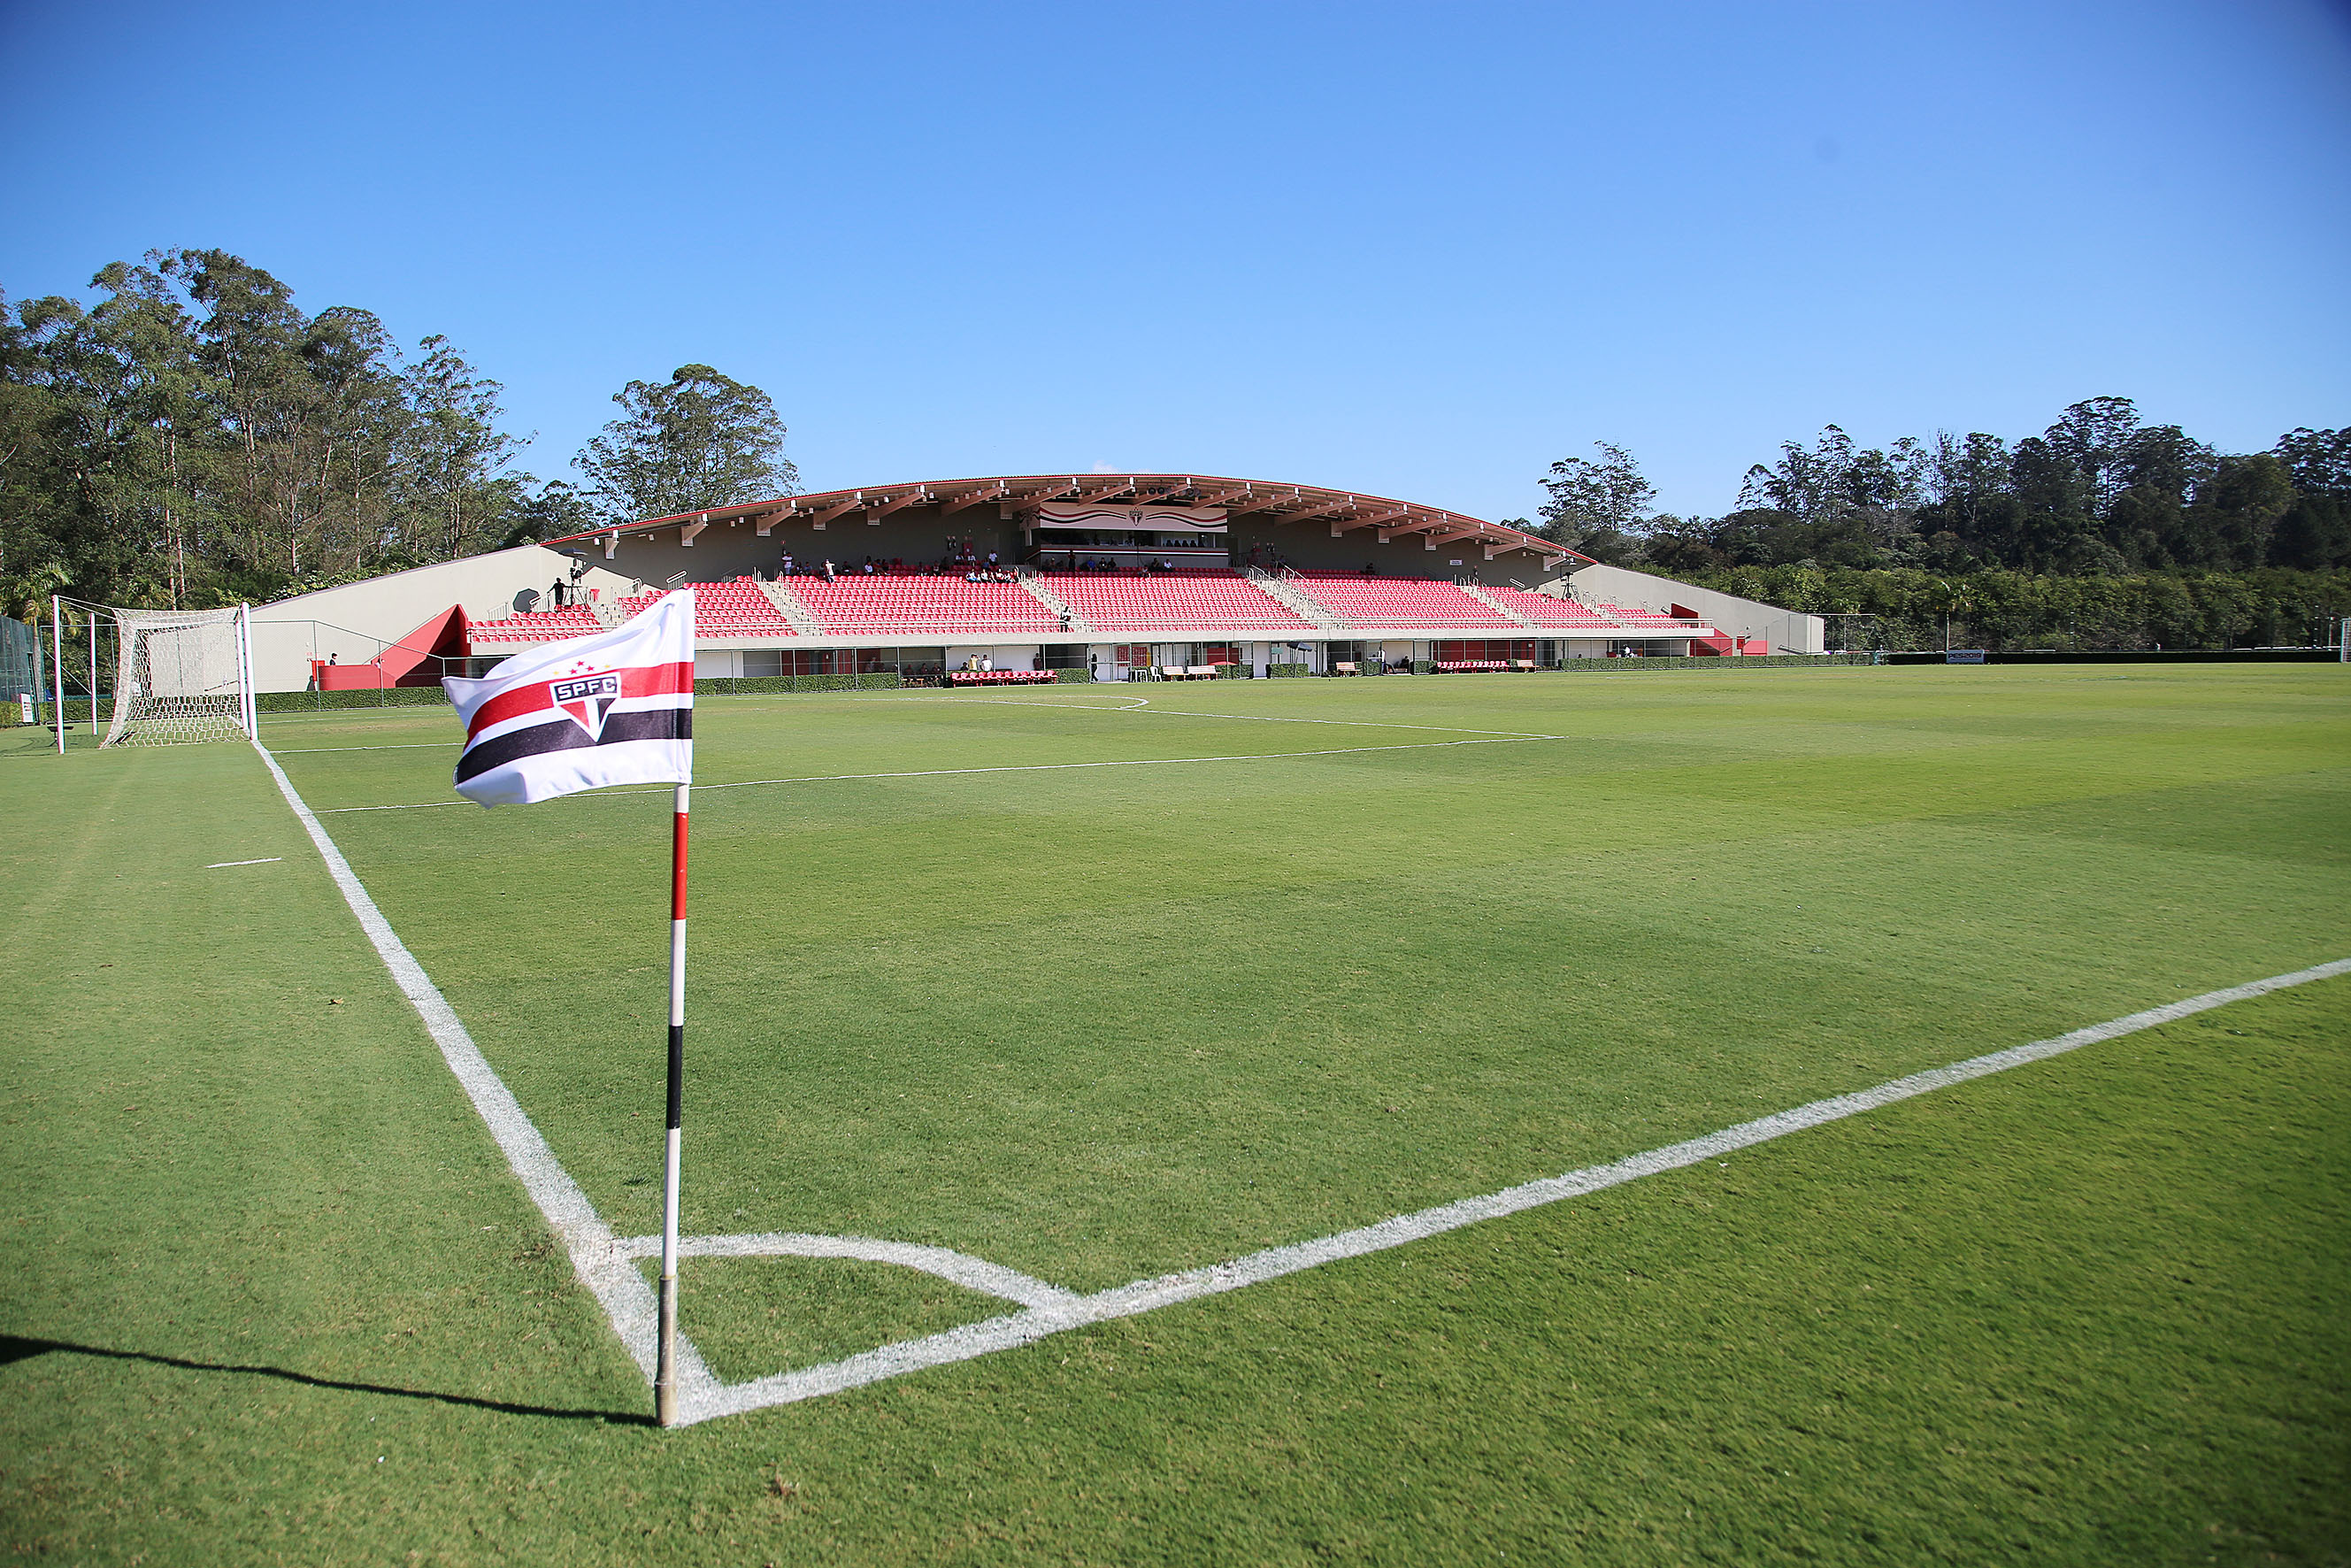 TOUR NO CT DE COTIA: Conheça toda a estrutura da CFA do São Paulo FC 